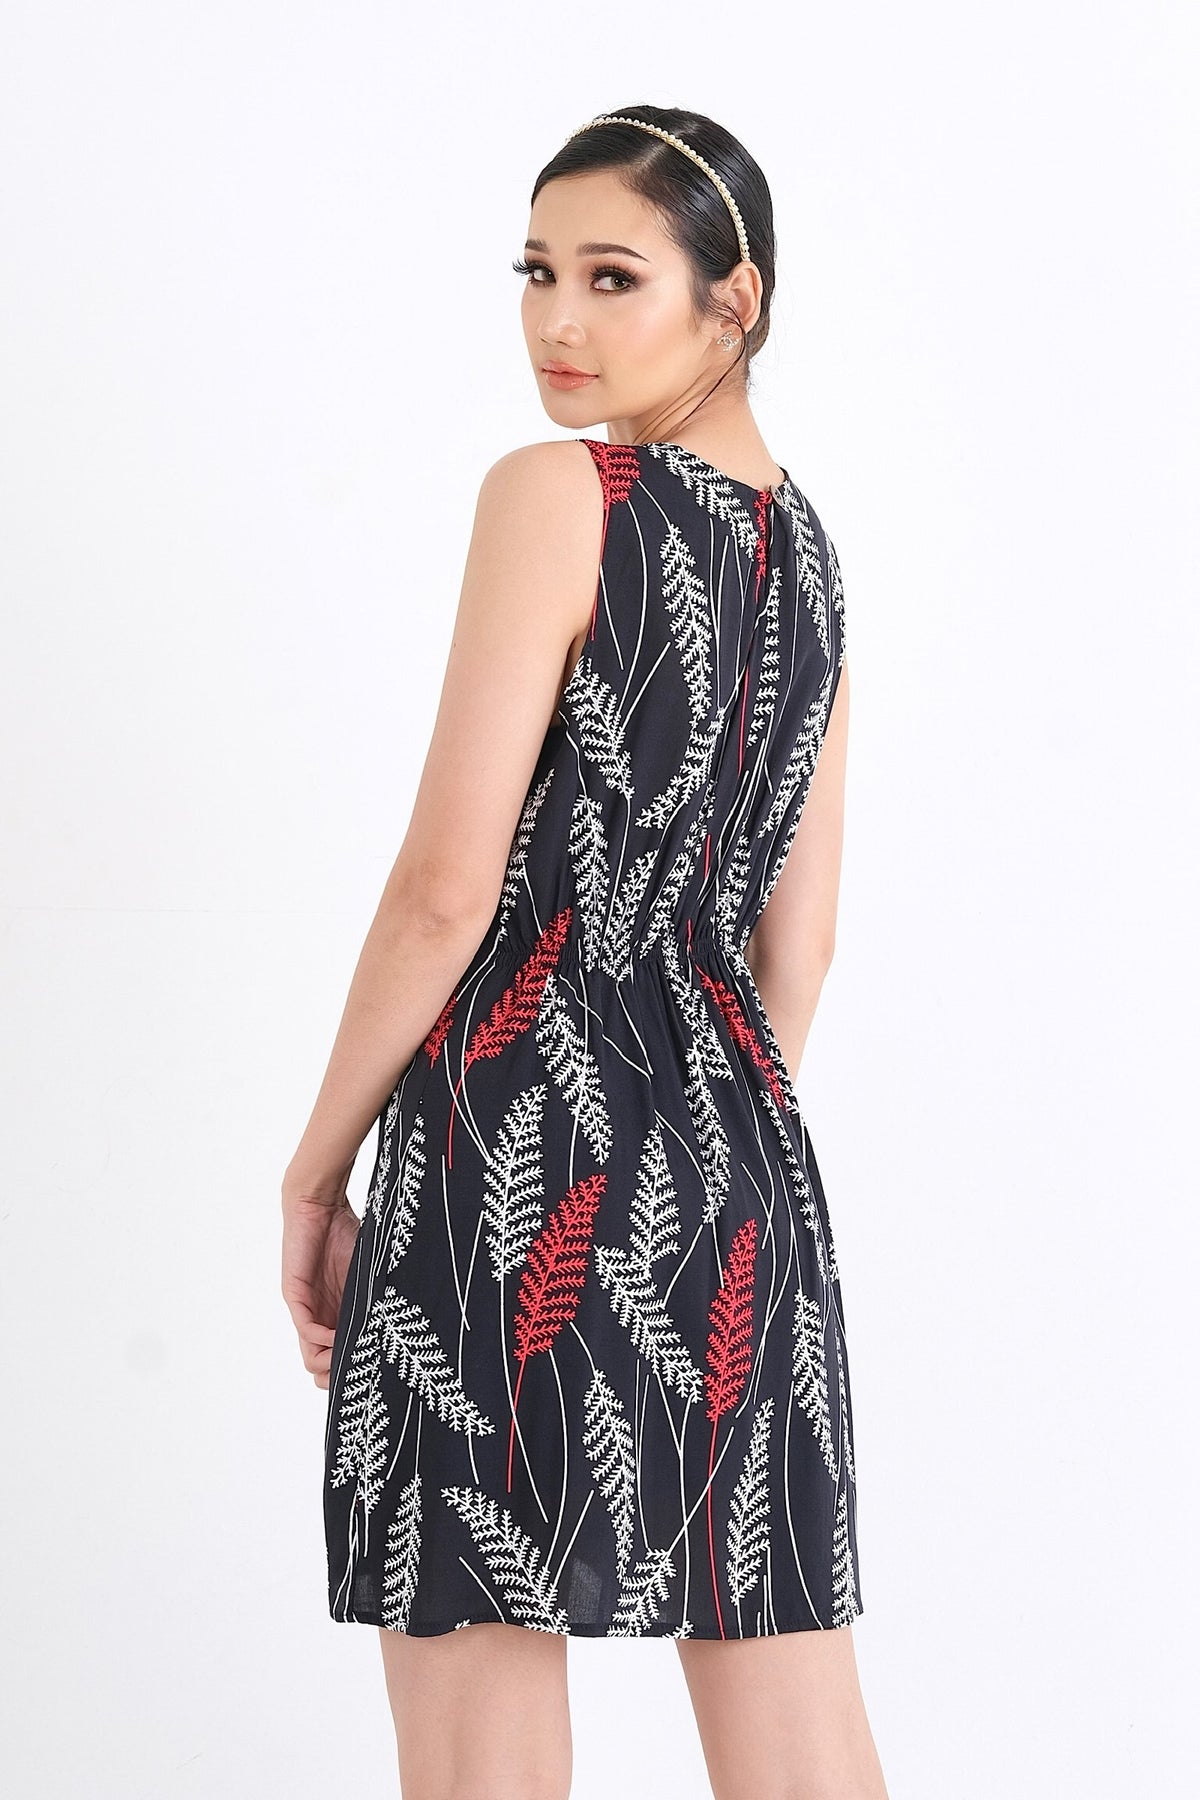 Explorez notre collection avec cette robe en viscose fluide, disponible pour les femmes au Québec. Achetez en ligne et choisissez parmi les tailles XS à XXL pour allier confort et style chic cet été.